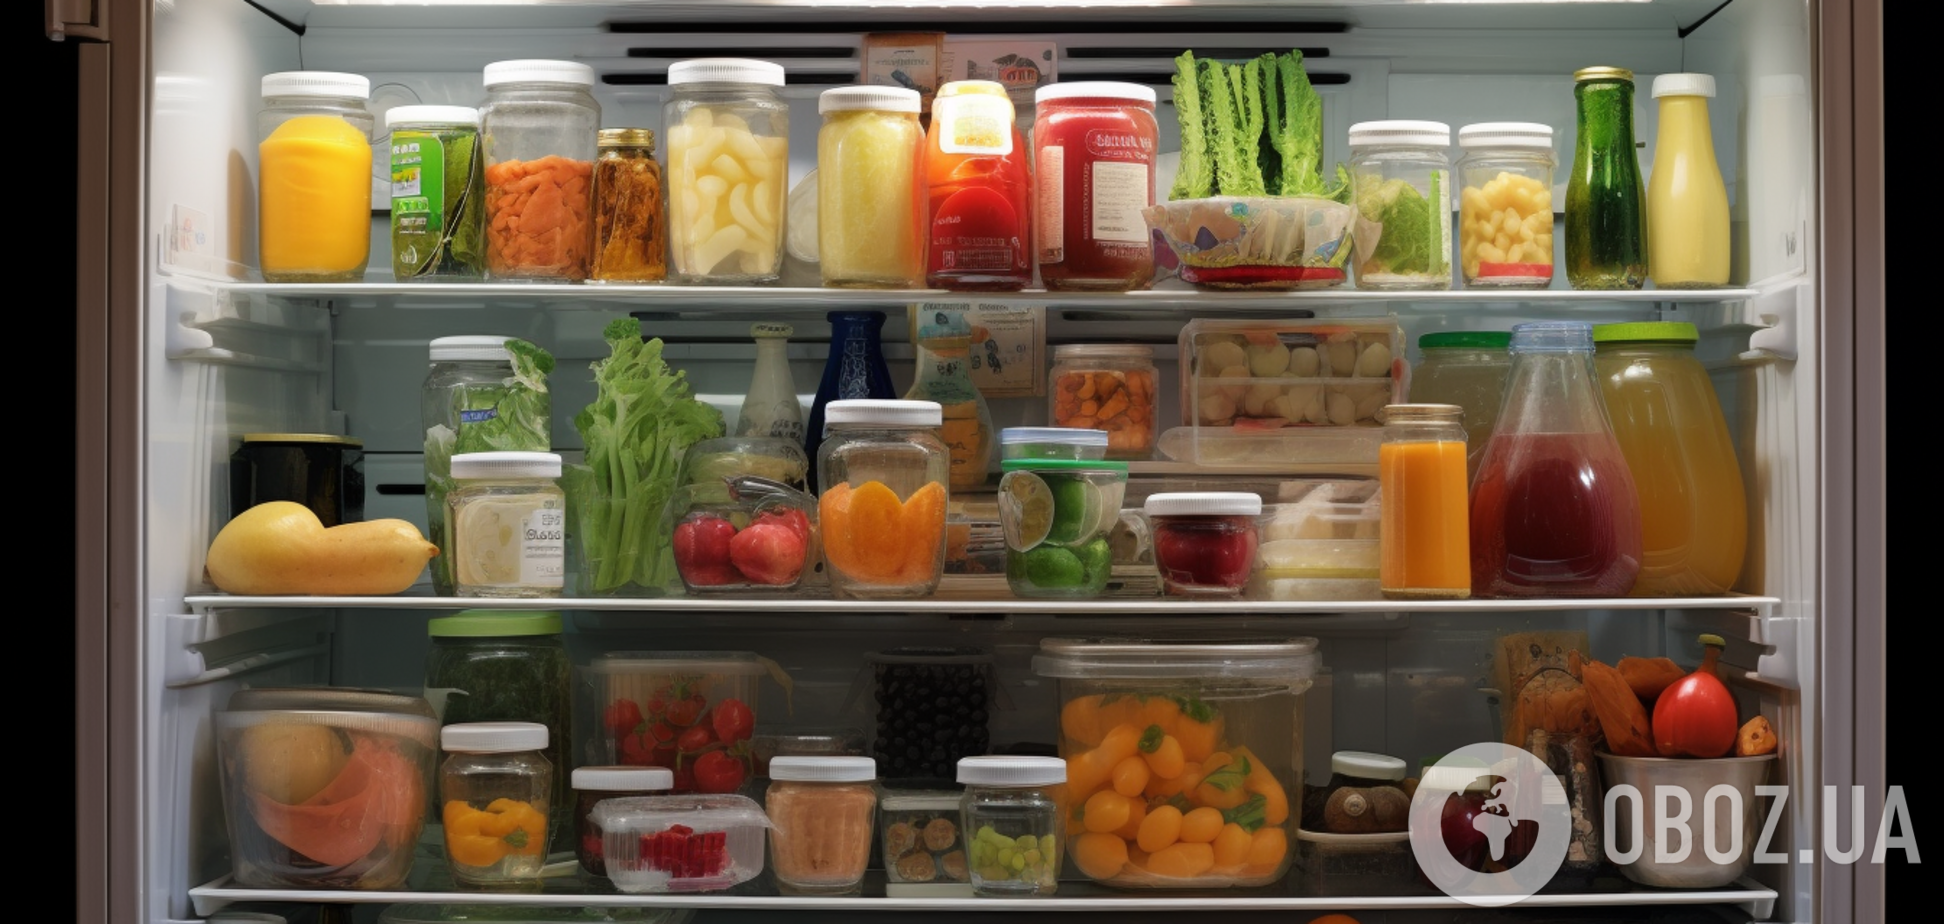 Как хранить продукты в холодильнике: правила зонирования